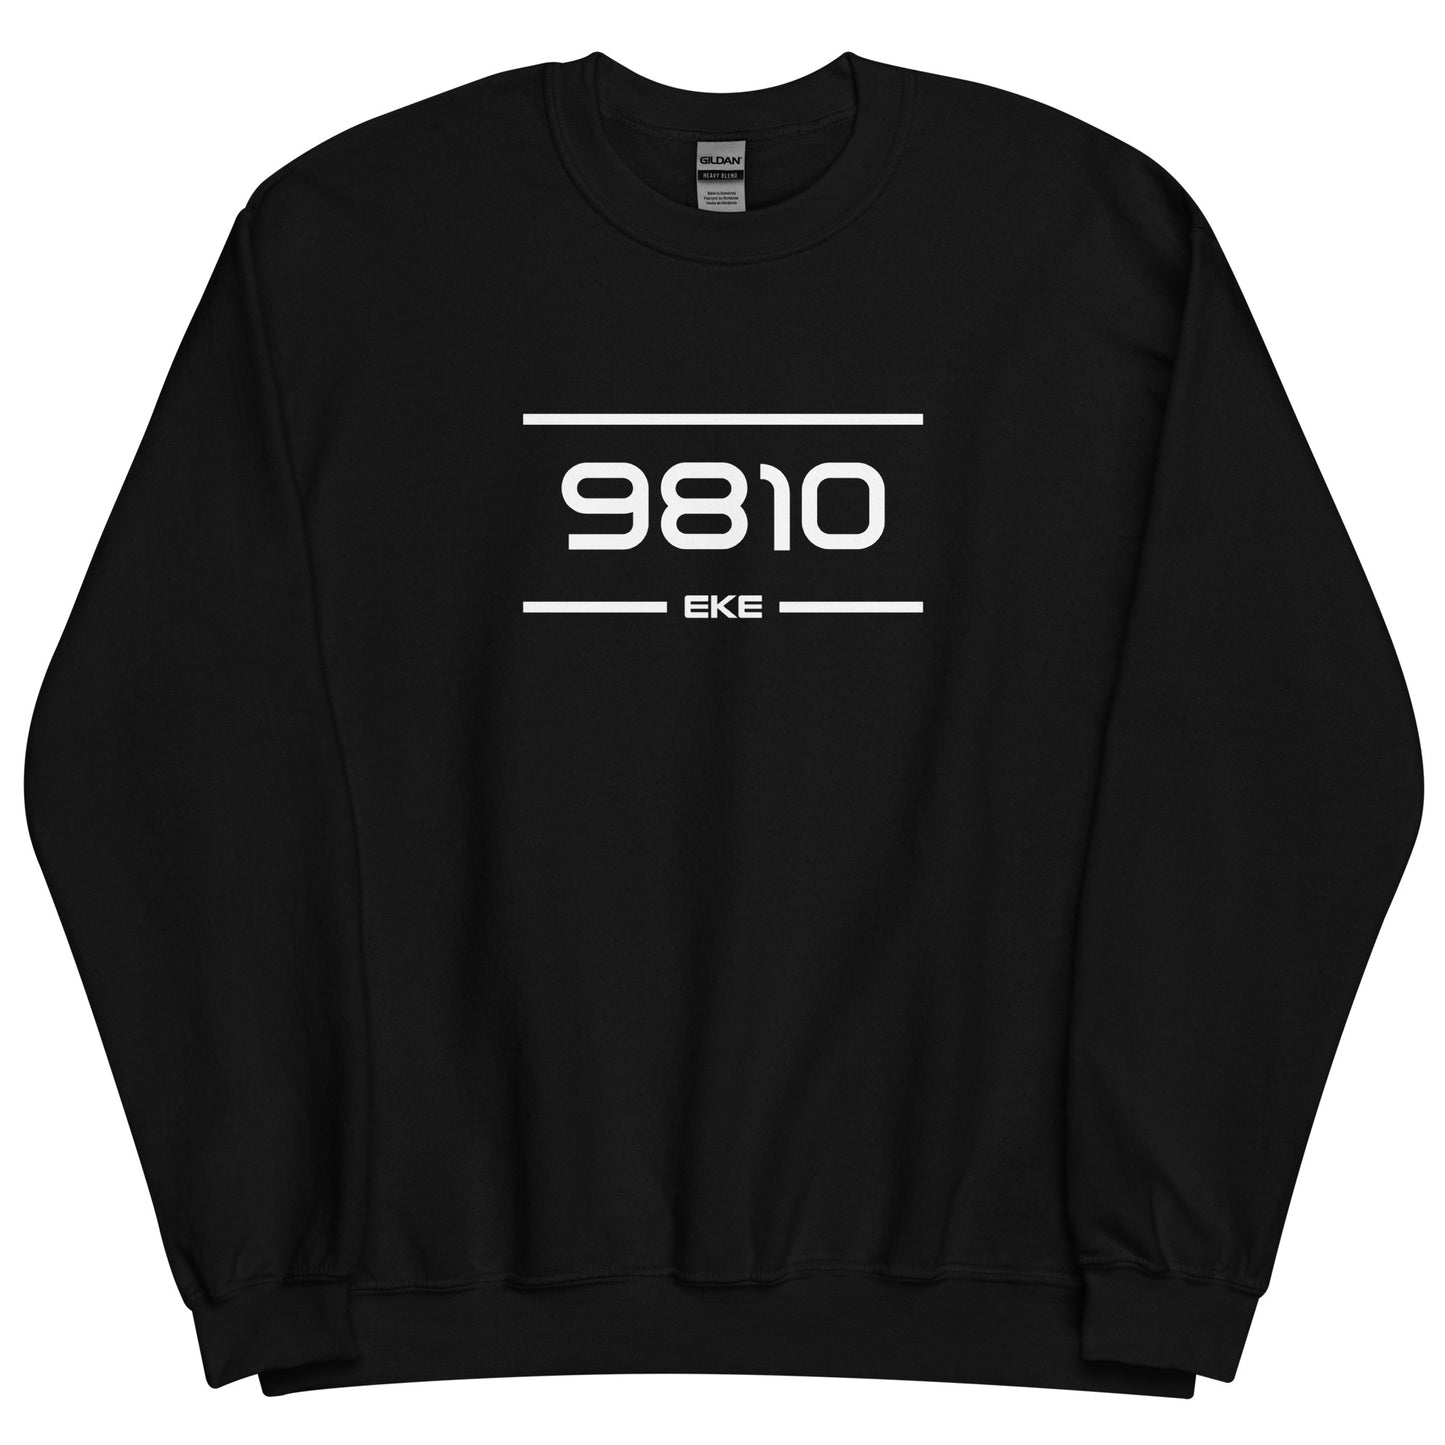 Sweater - 9810 - Eke (M/V)